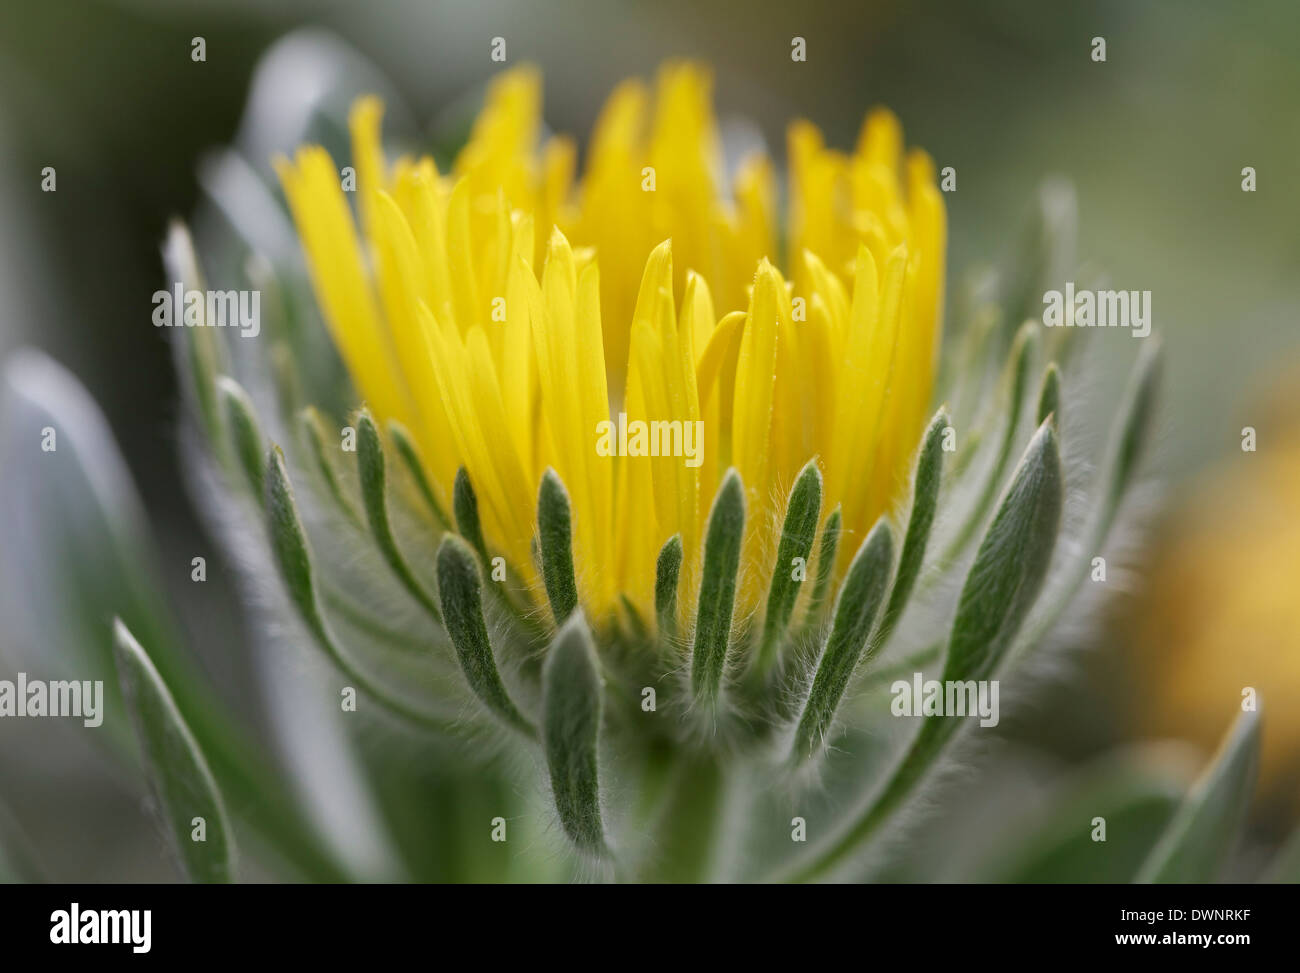 Aeonium (Aeonium ciliatum), native to Tenerife, Canary Islands Stock Photo